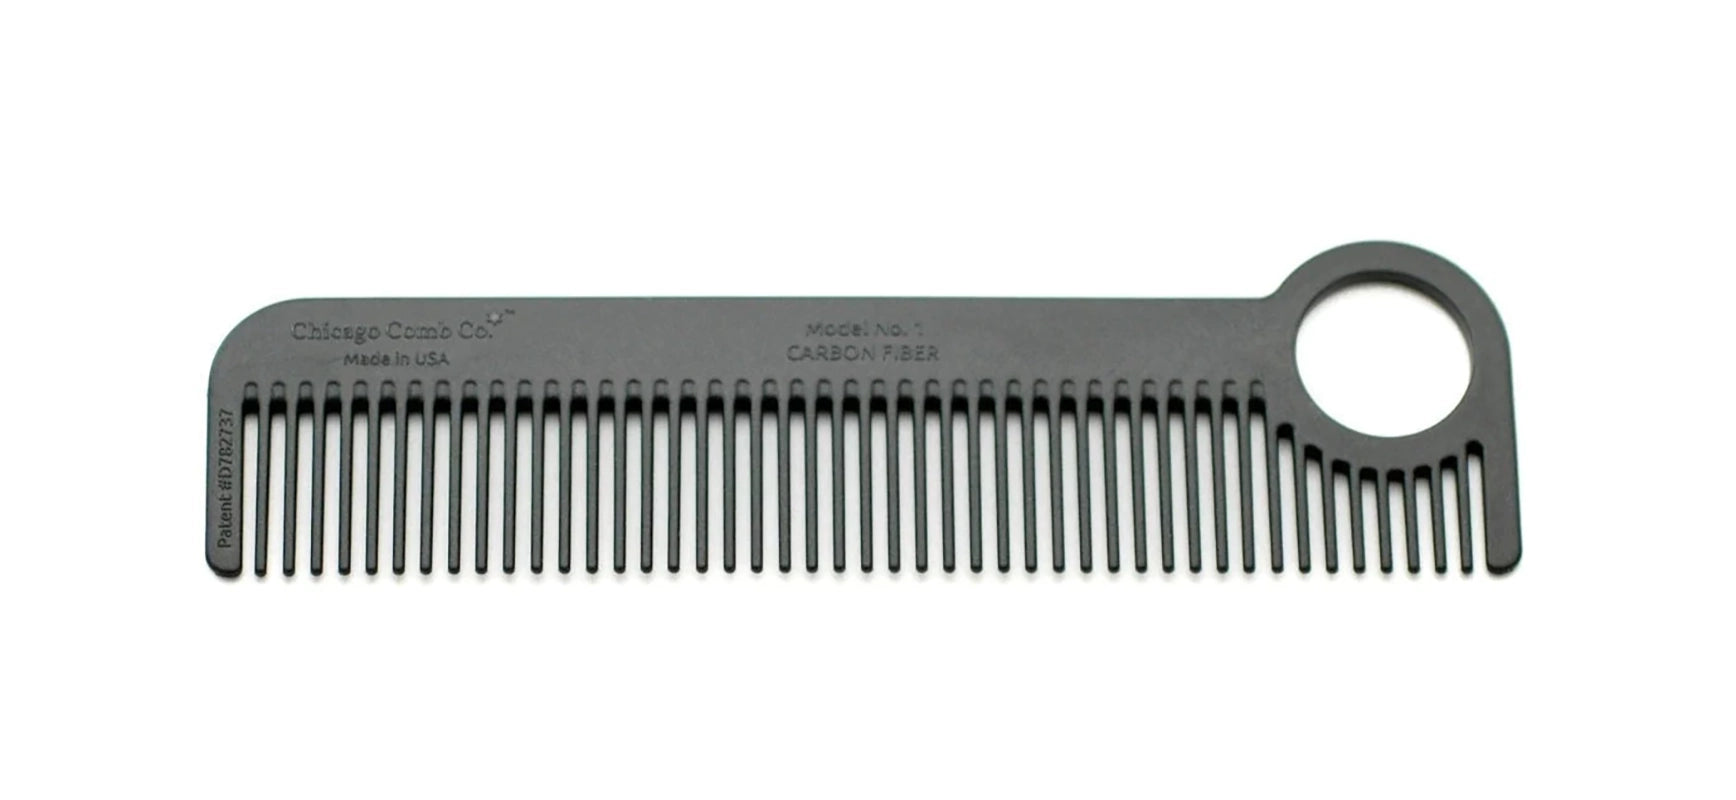 Chicago Comb Modle #1 comb